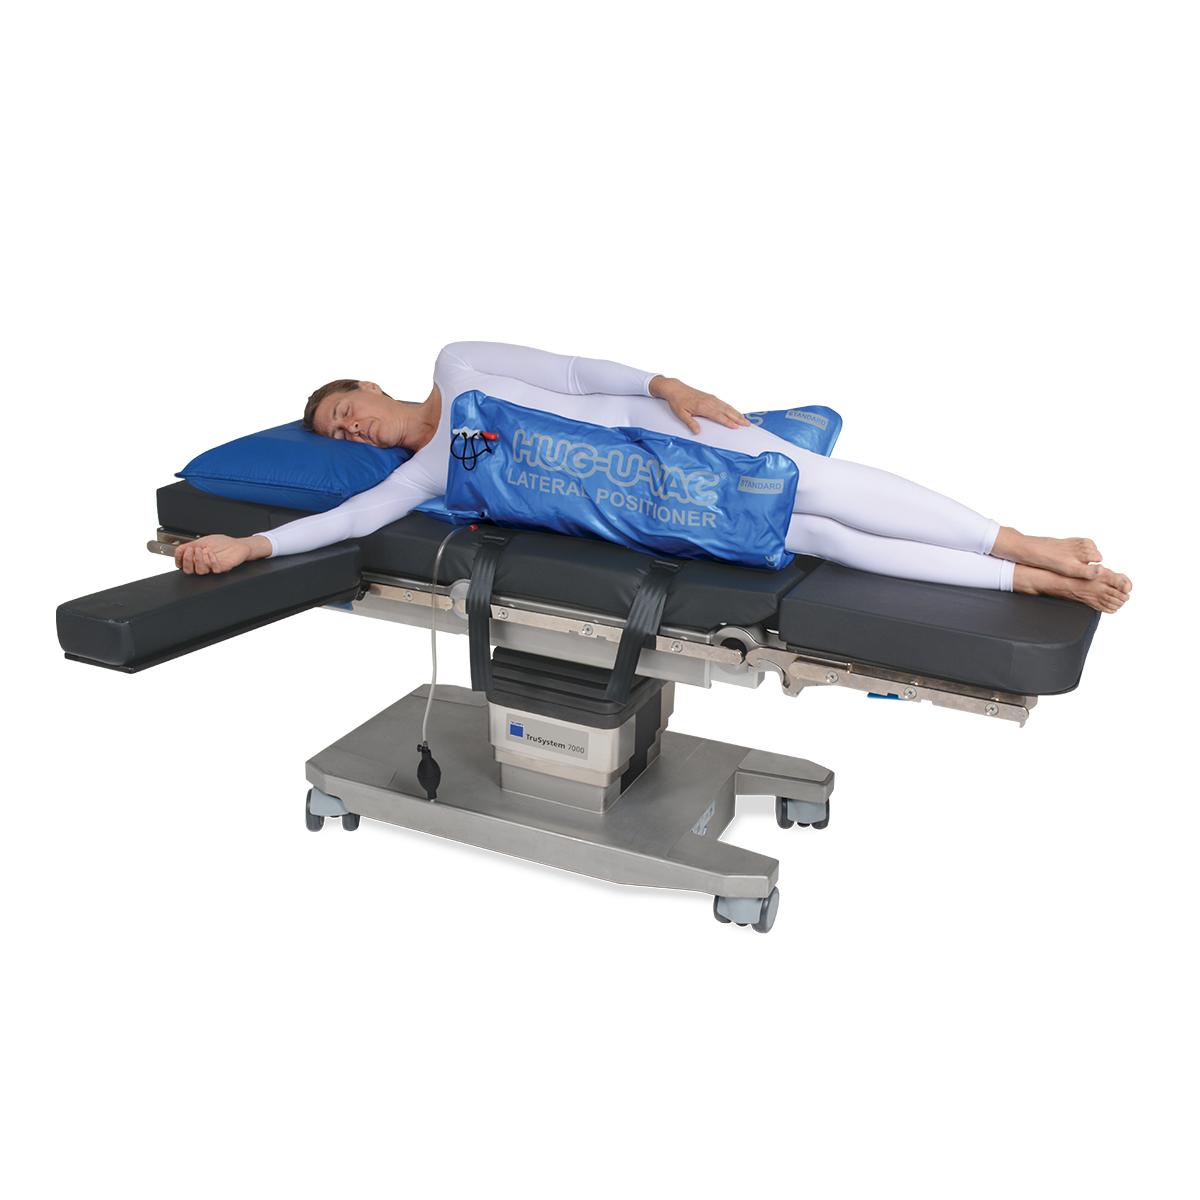 Posicionador lateral Allen® Hug-U-Vac® com o paciente na posição lateral